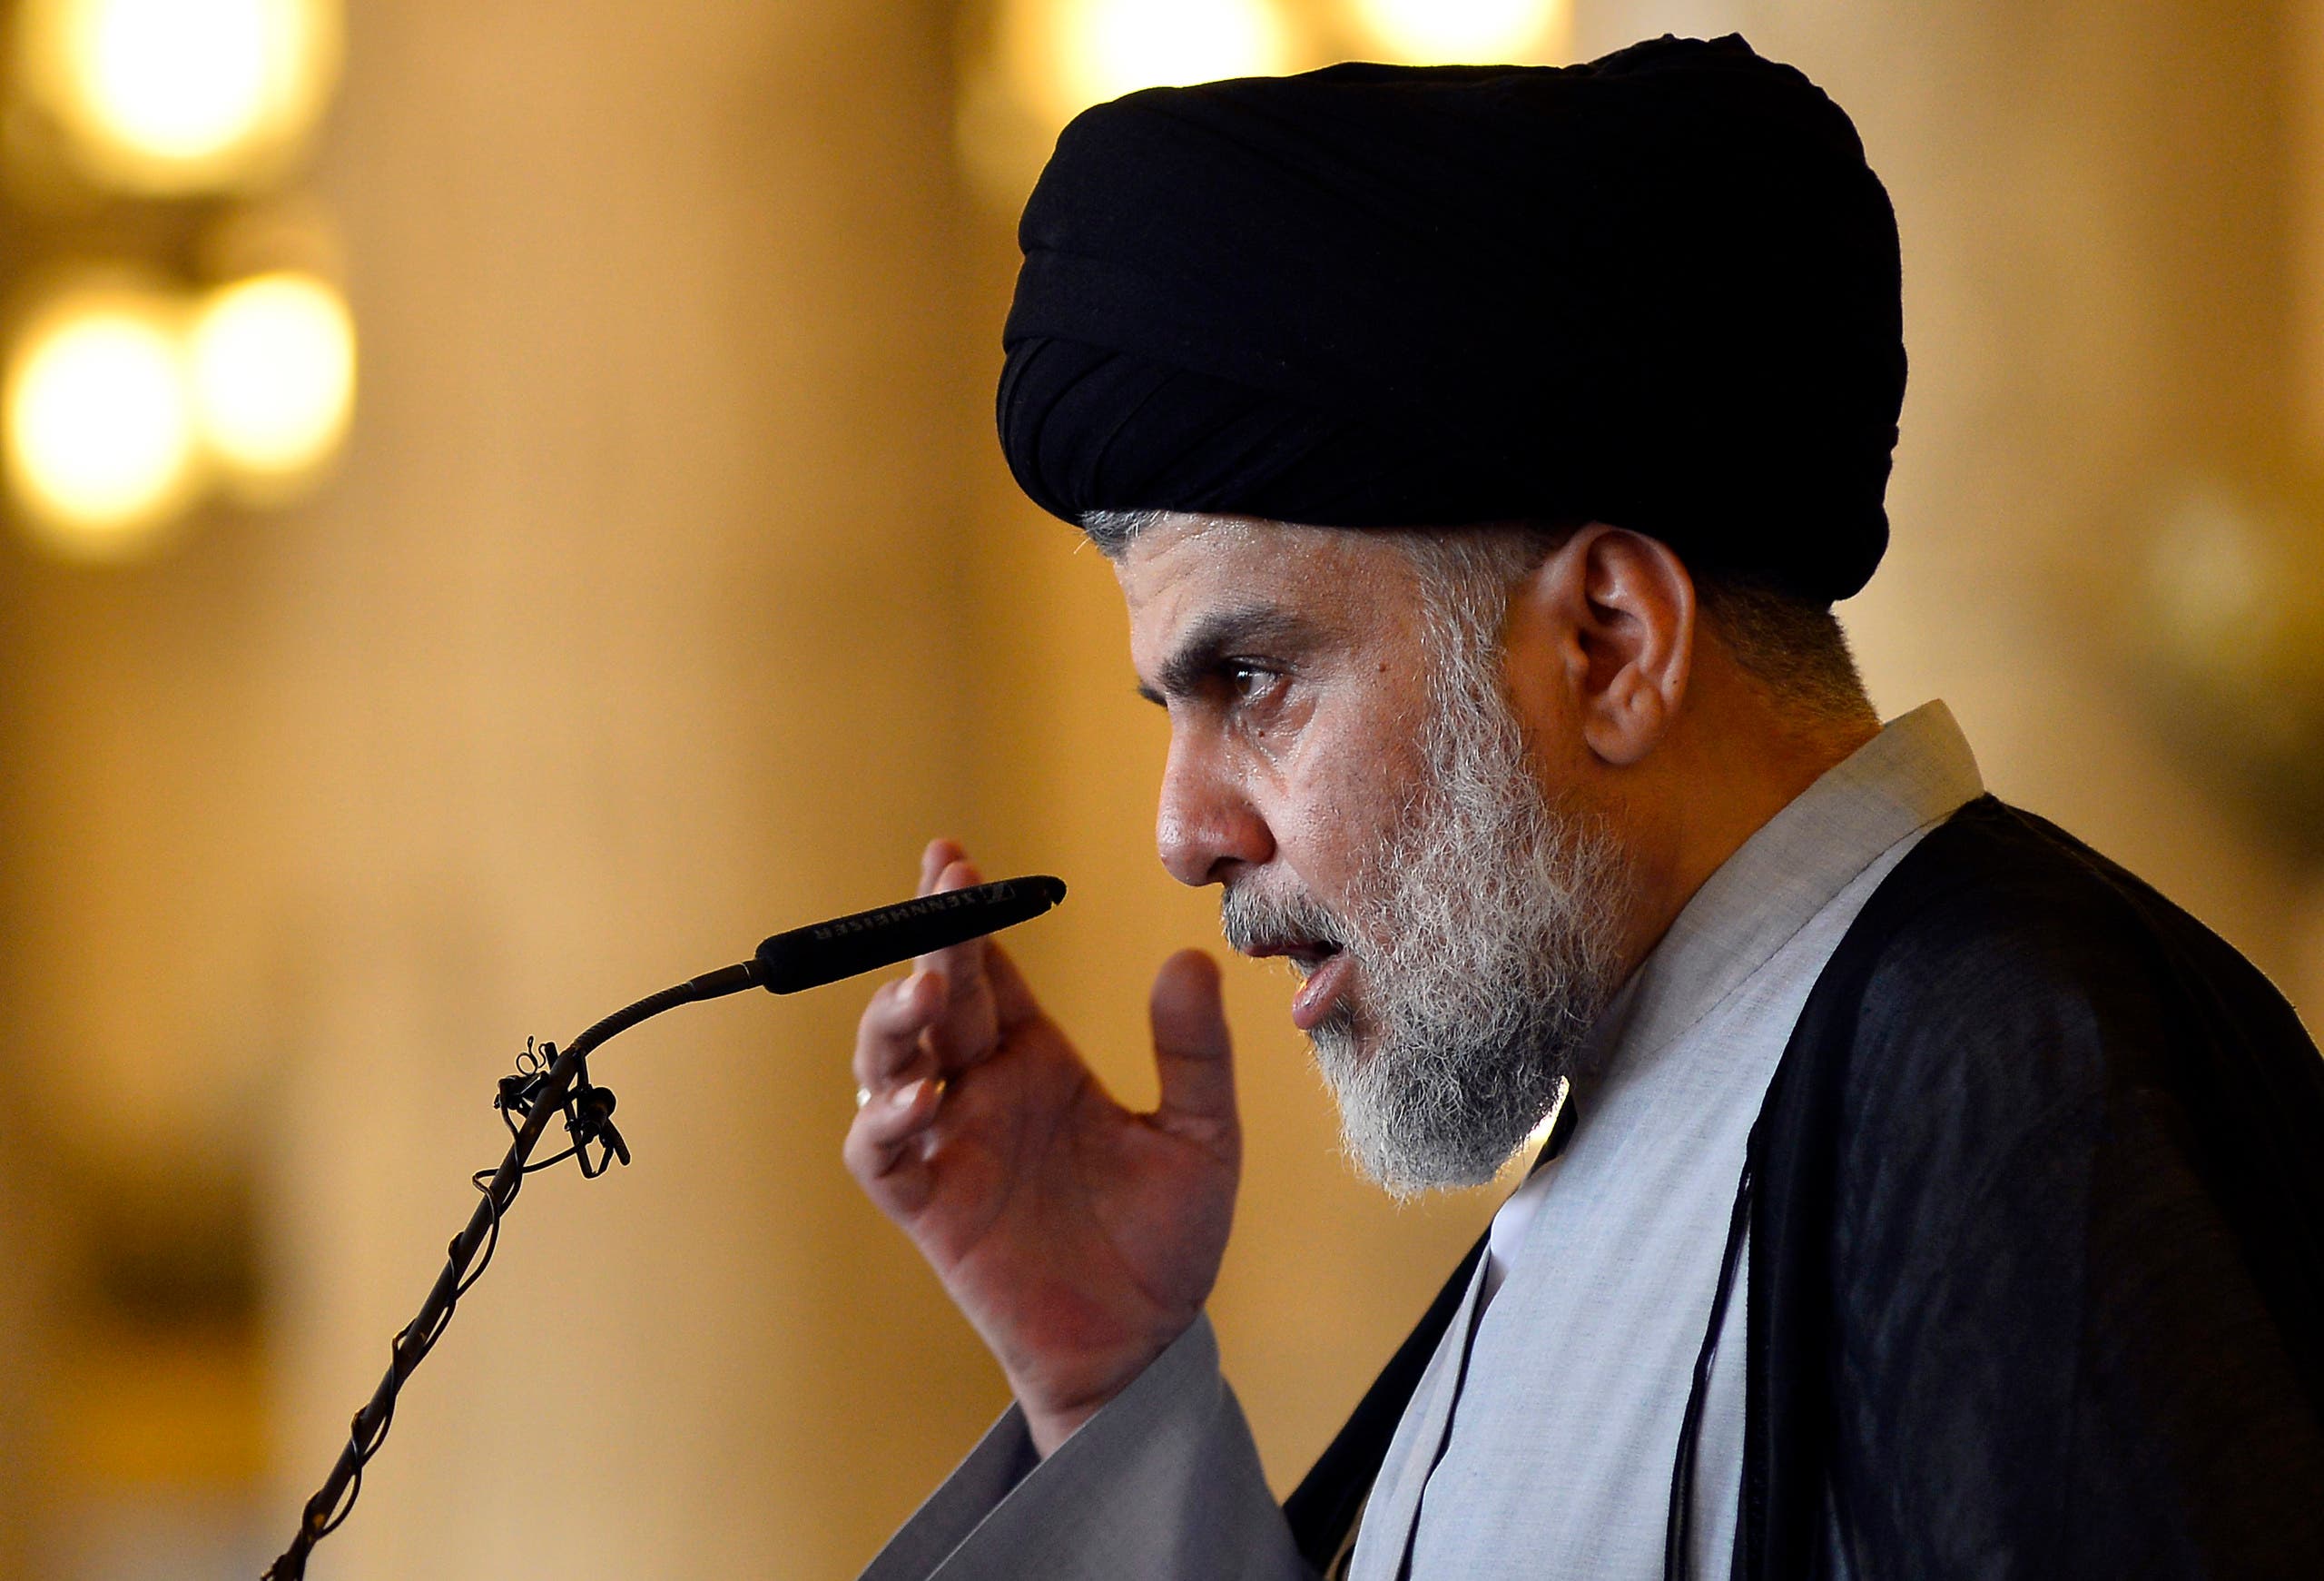 Shiite cleric Moqtada al-Sadr